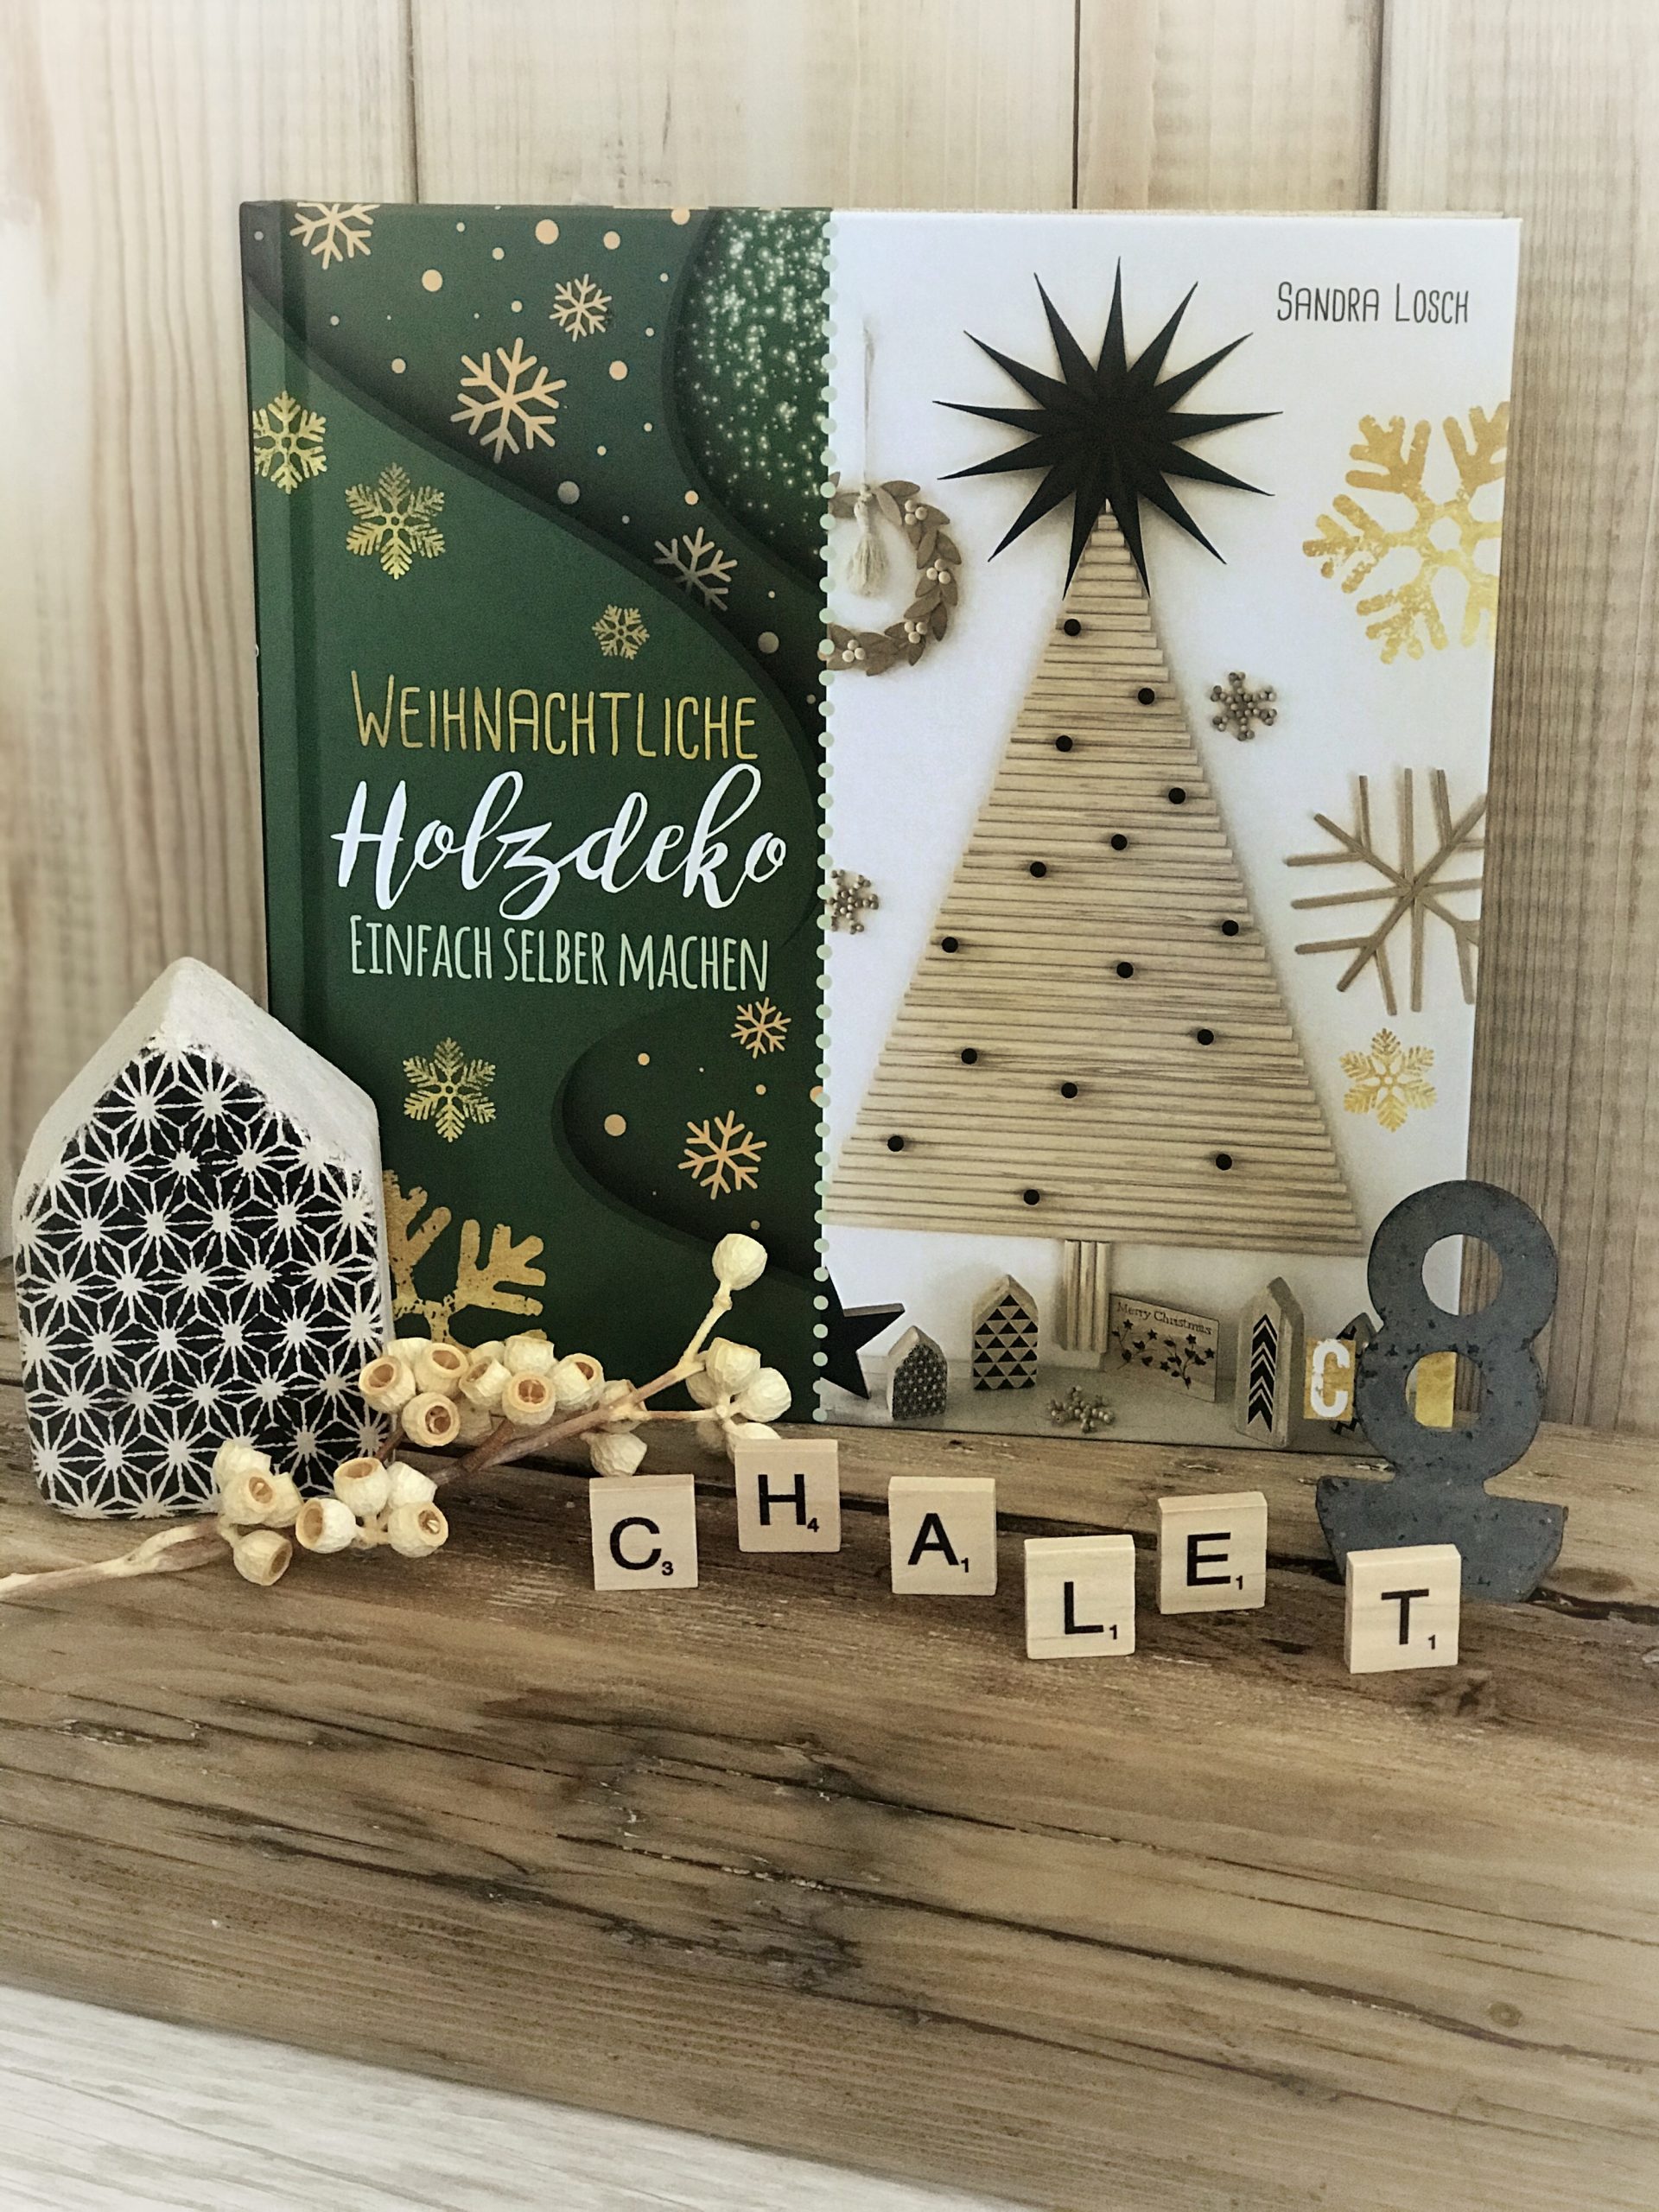 Weihnachtliche Holzdeko von Sandra Lorch